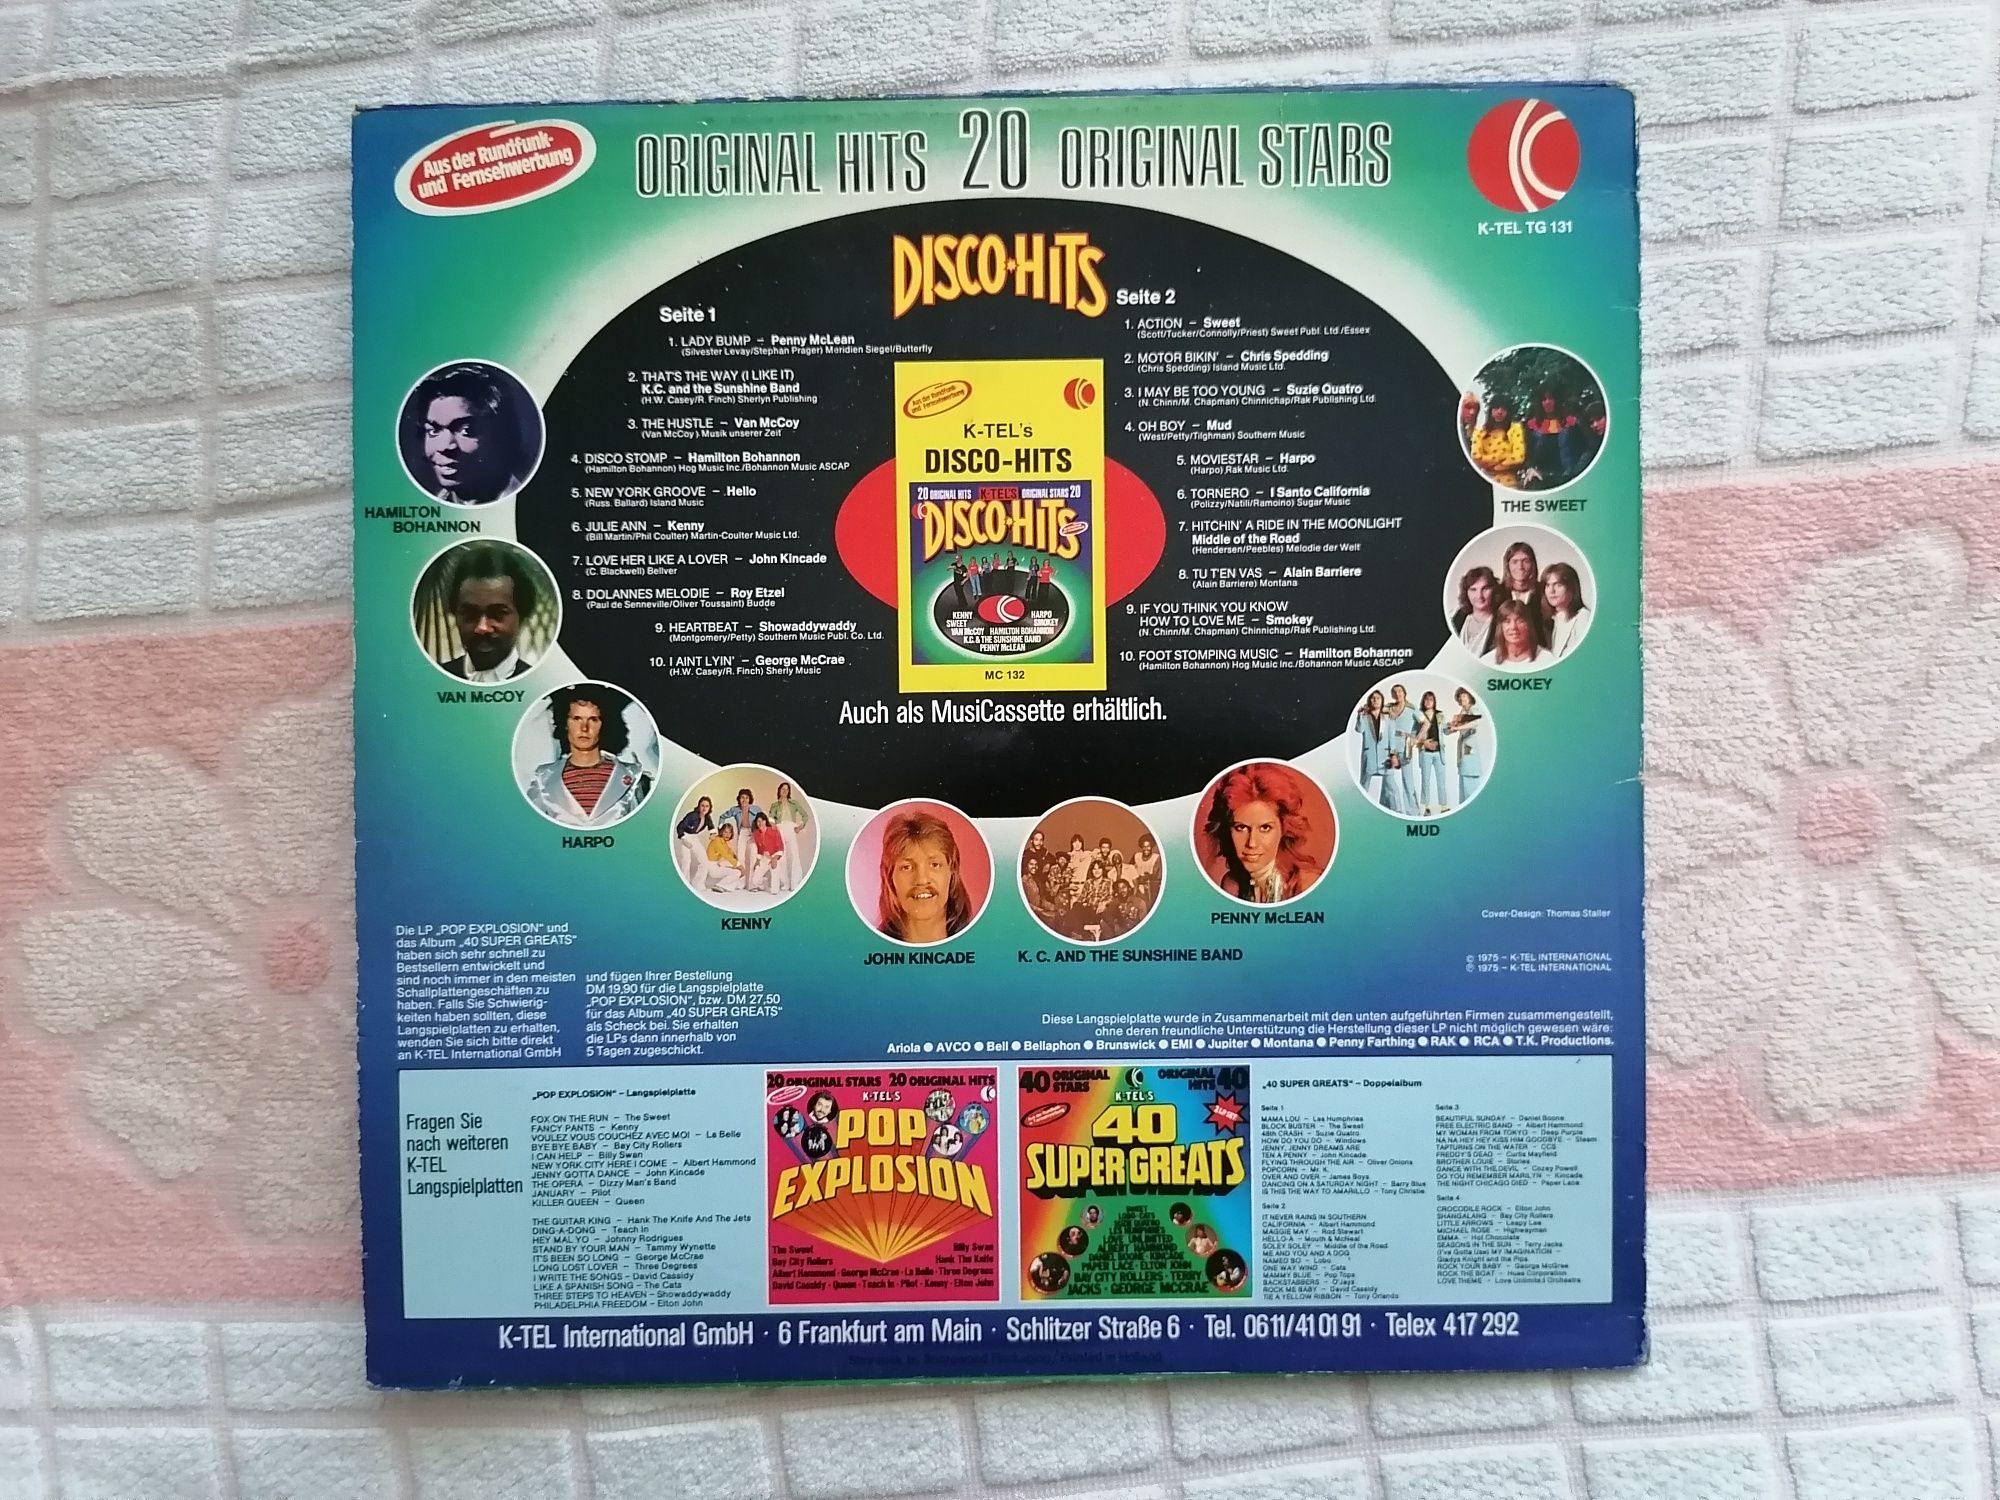 Пластинка, сборник диско хитов 70-х годов.